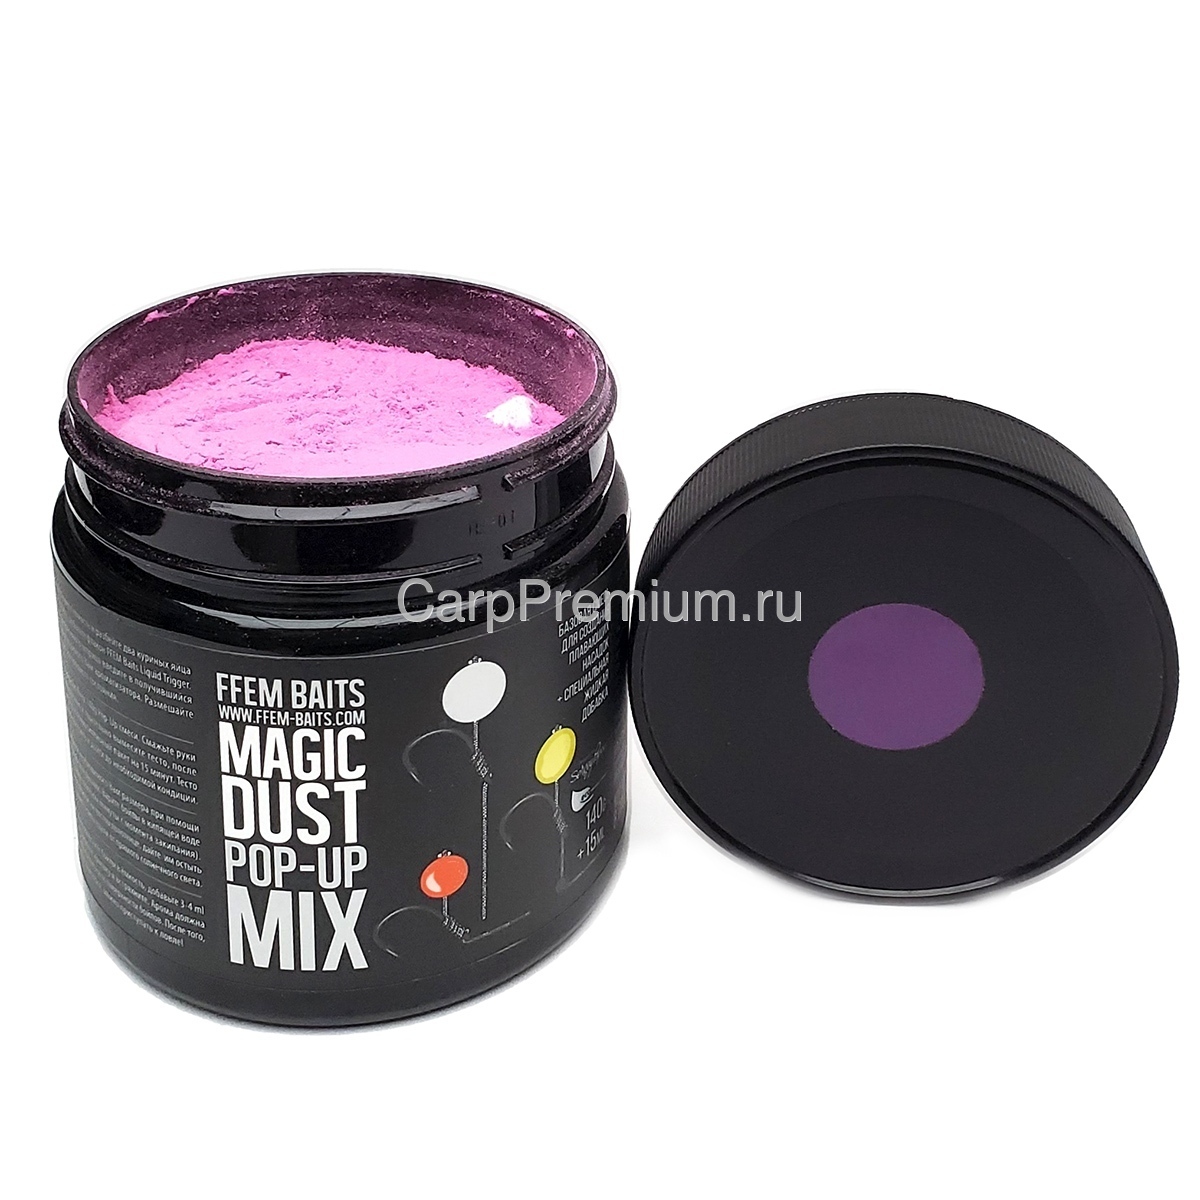 Смесь для изготовления плавающих бойлов Фиолетовая FFEM Baits (ФФЕМ Бейтс) - Pop-Up Mix Fluro Purple, 140 г